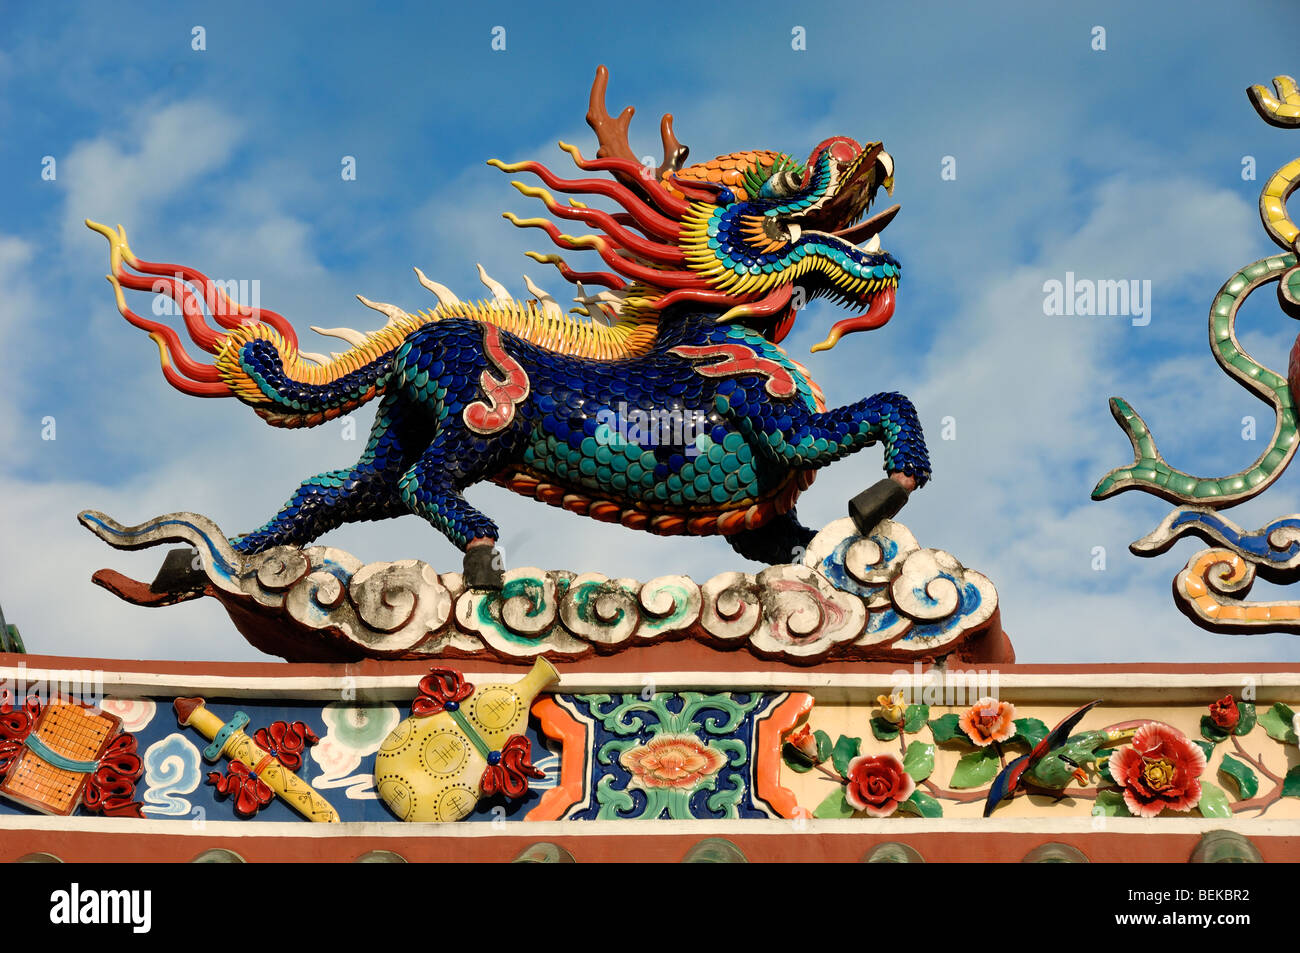 Un dragon chinois en céramique sur le toit de la Hong san temple chinois dans le quartier chinois de Sarawak Kuching Malaisie Bornéo Banque D'Images